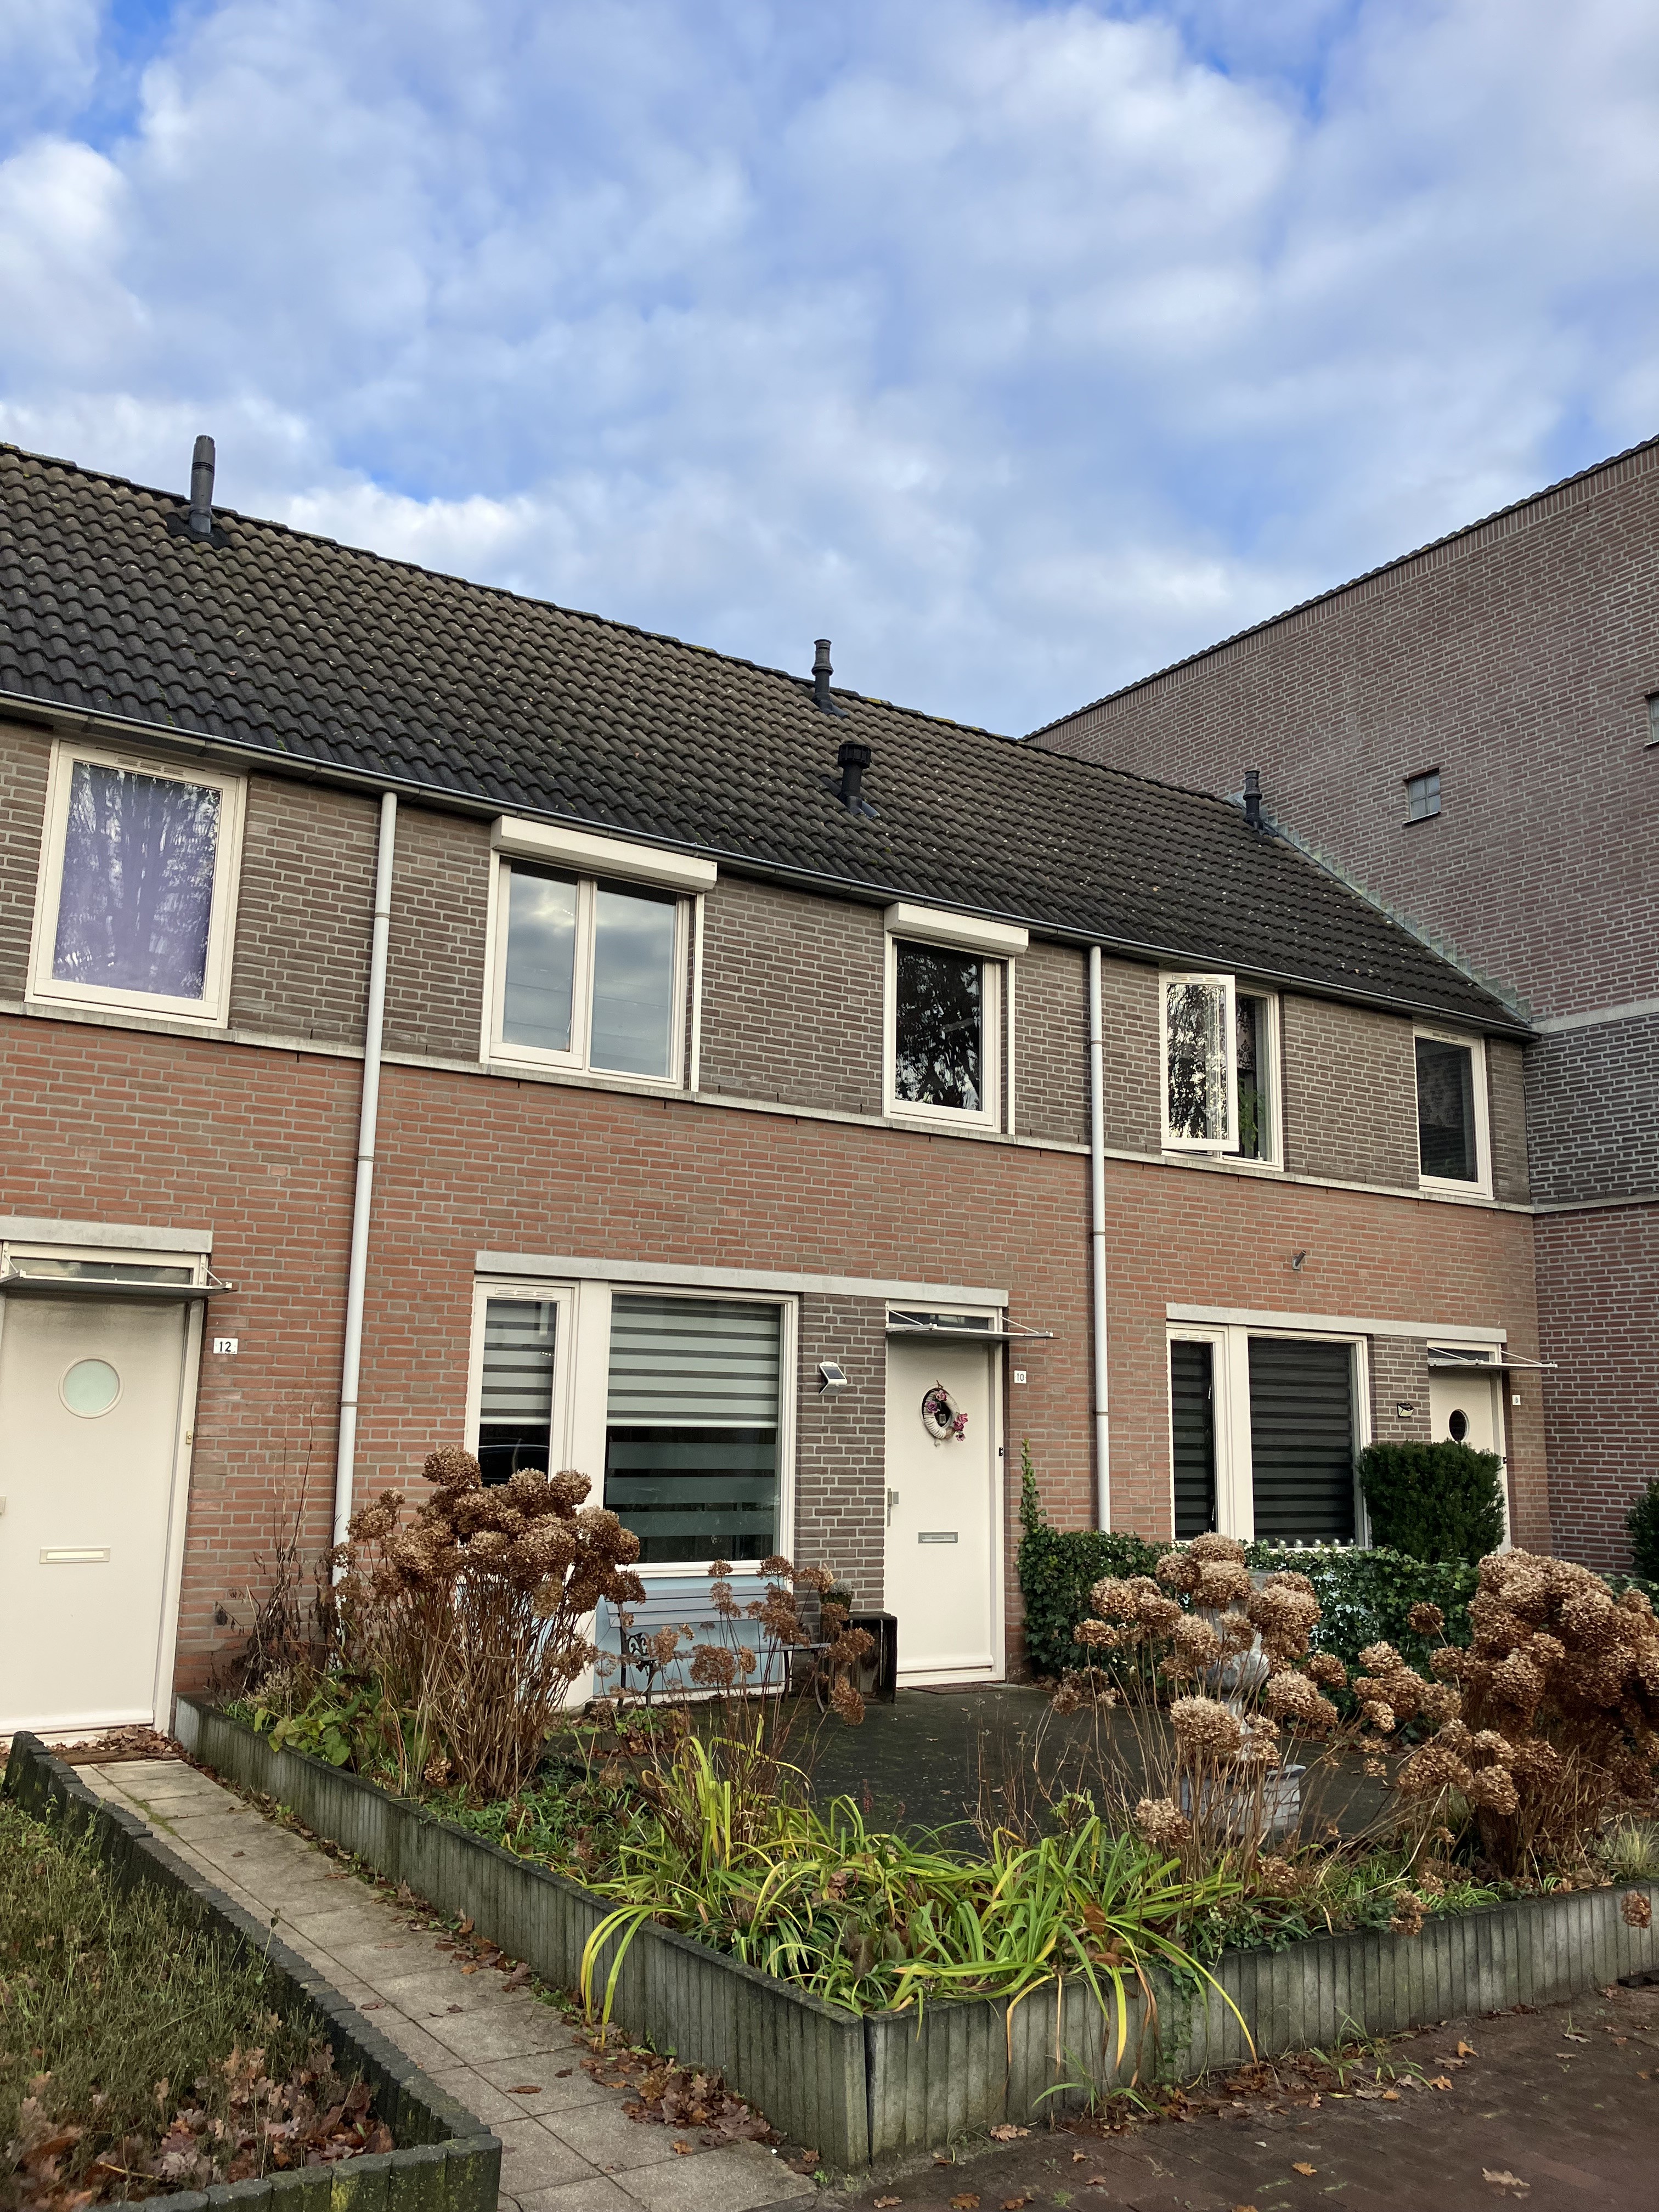 Rogier van Leefdaelstraat 10, 5081 JL Hilvarenbeek, Nederland